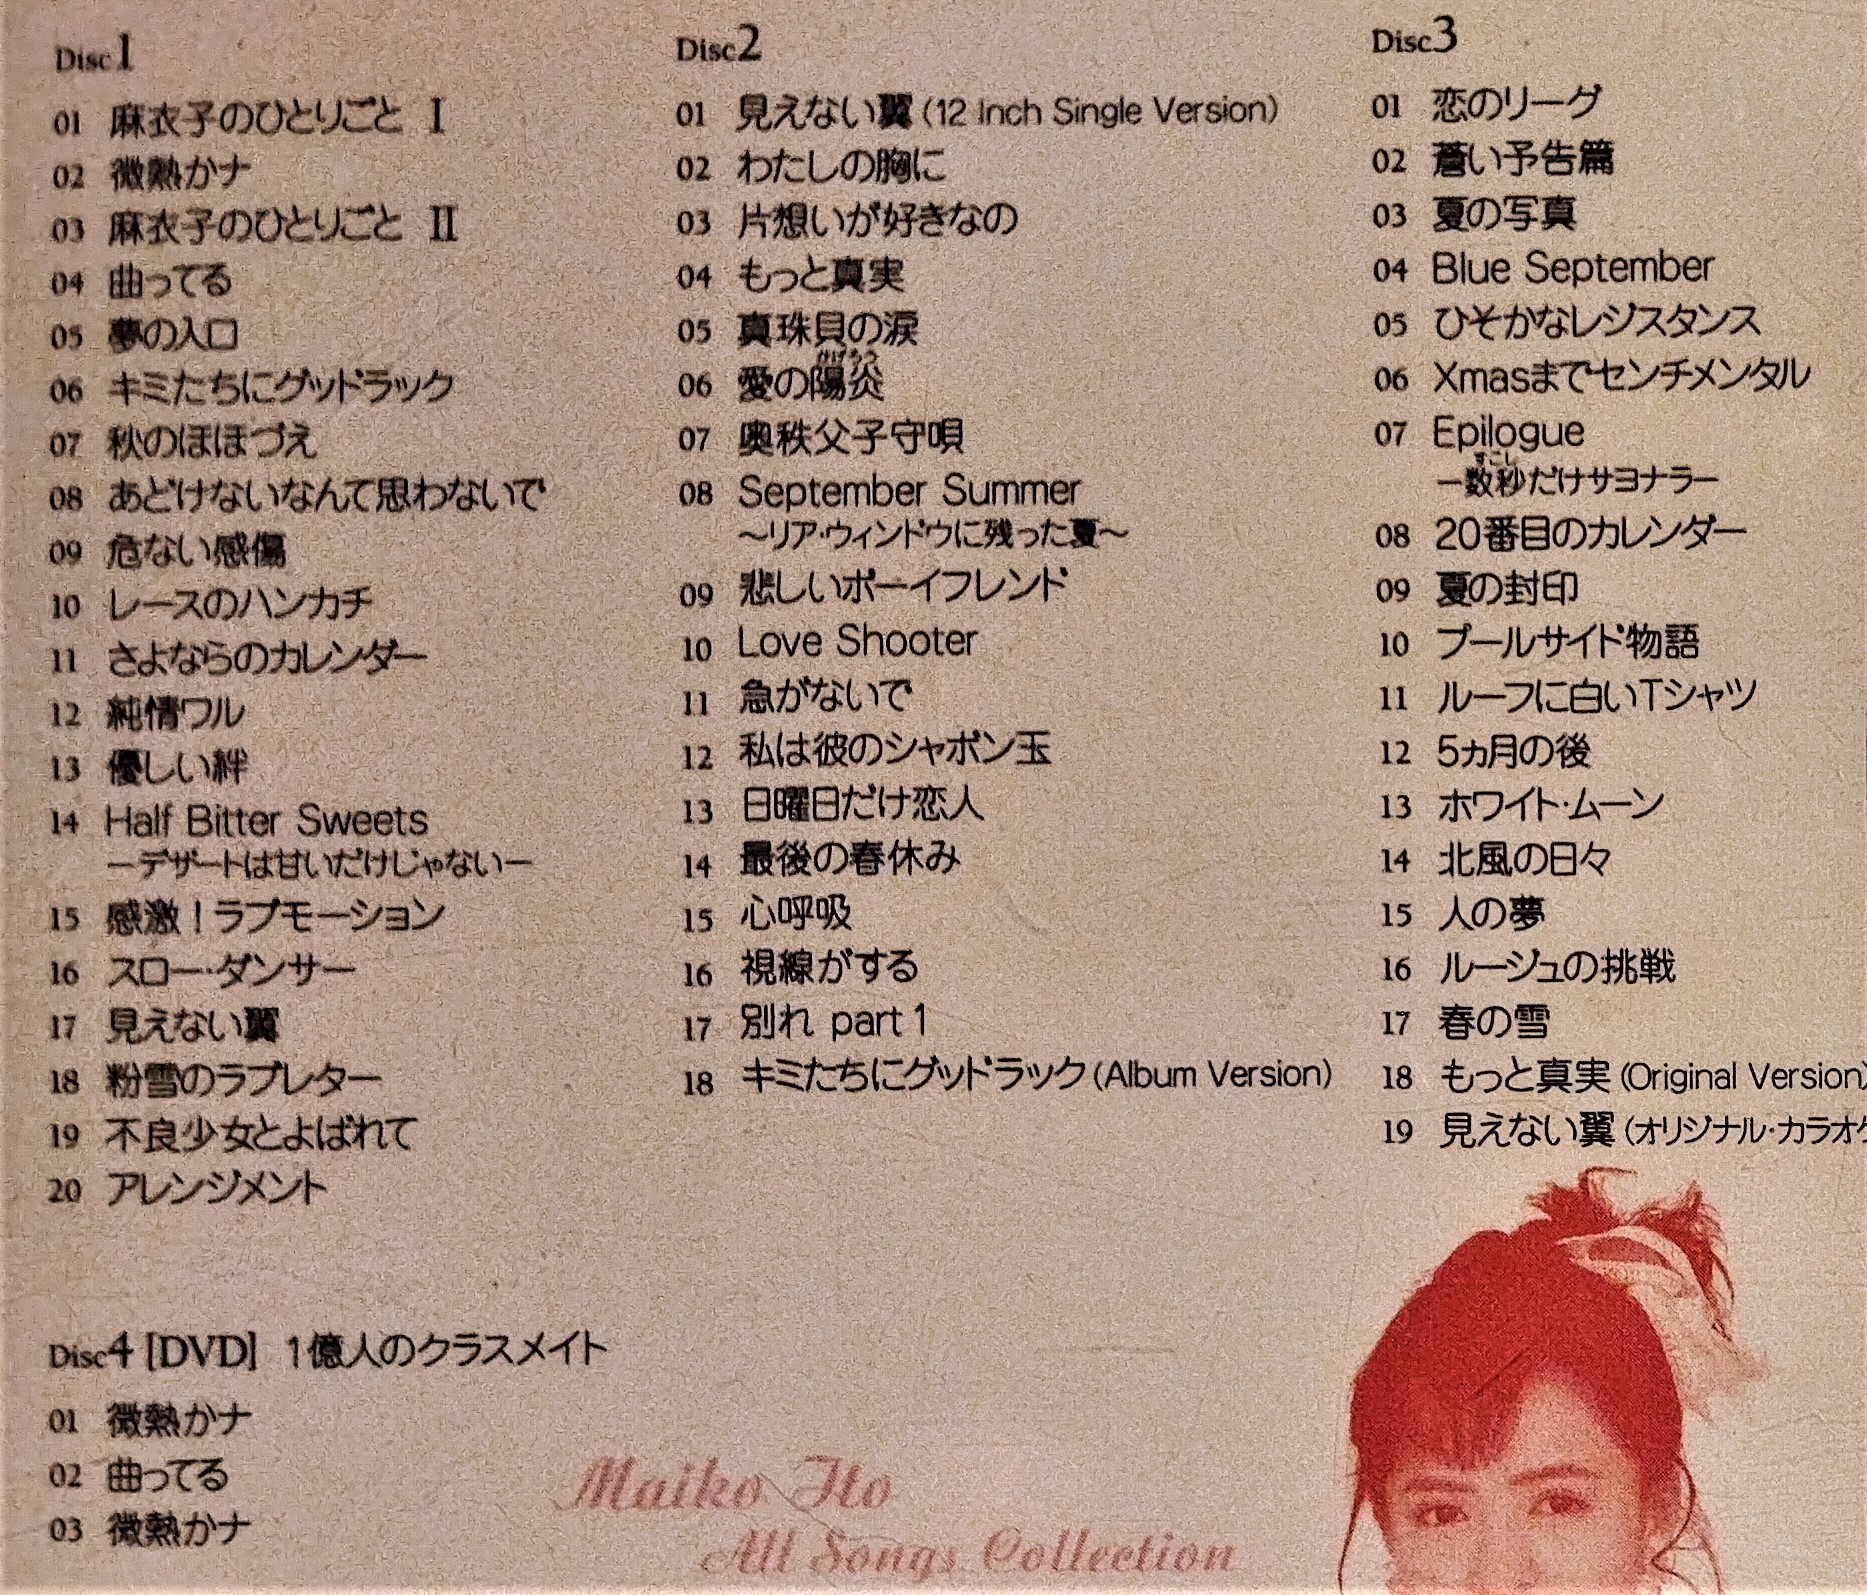 伊藤麻衣子 - アイドル・ミラクルバイブルシリーズ 伊藤麻衣子オール・ソングス・コレクション - 3CD+DVD